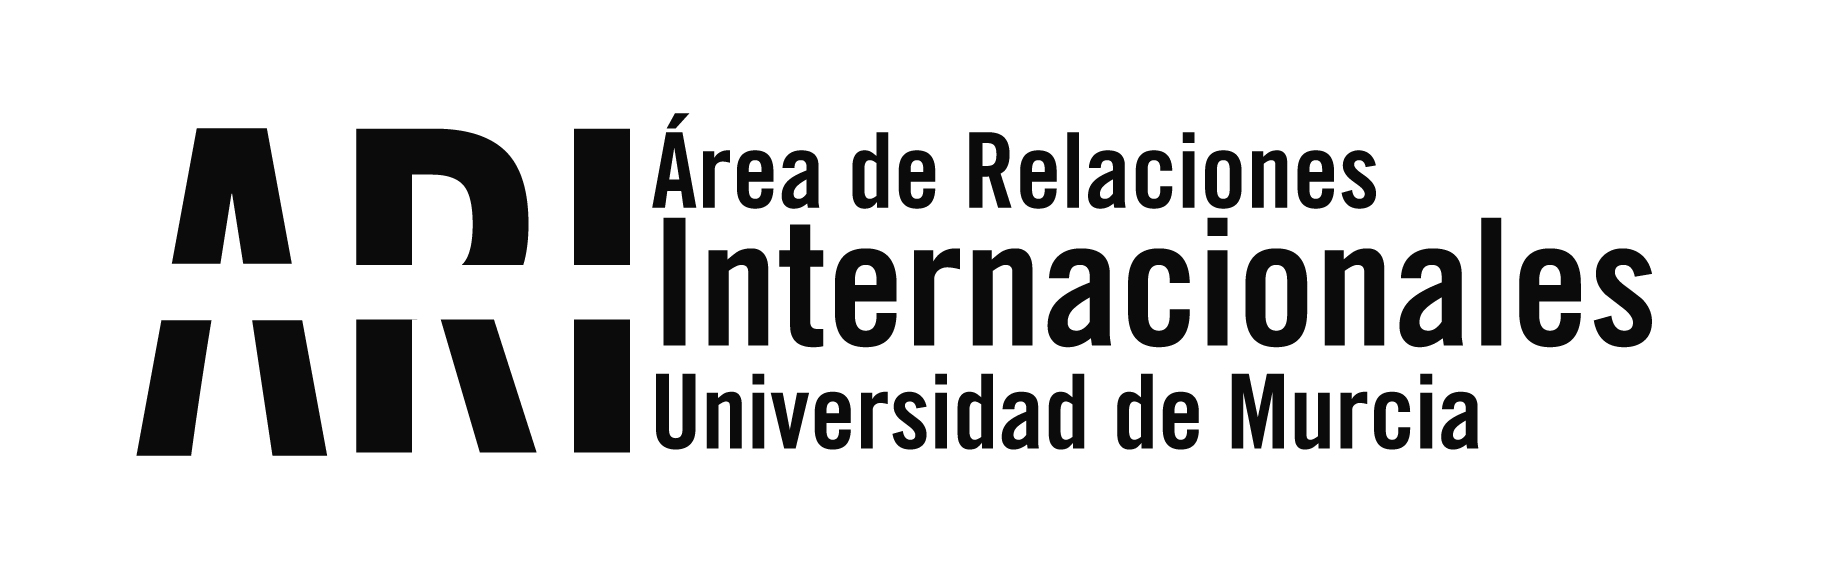 La Universidad de Murcia realizó una reunión de trabajo con el Consulado de Ecuador - Área de Relaciones Internacionales